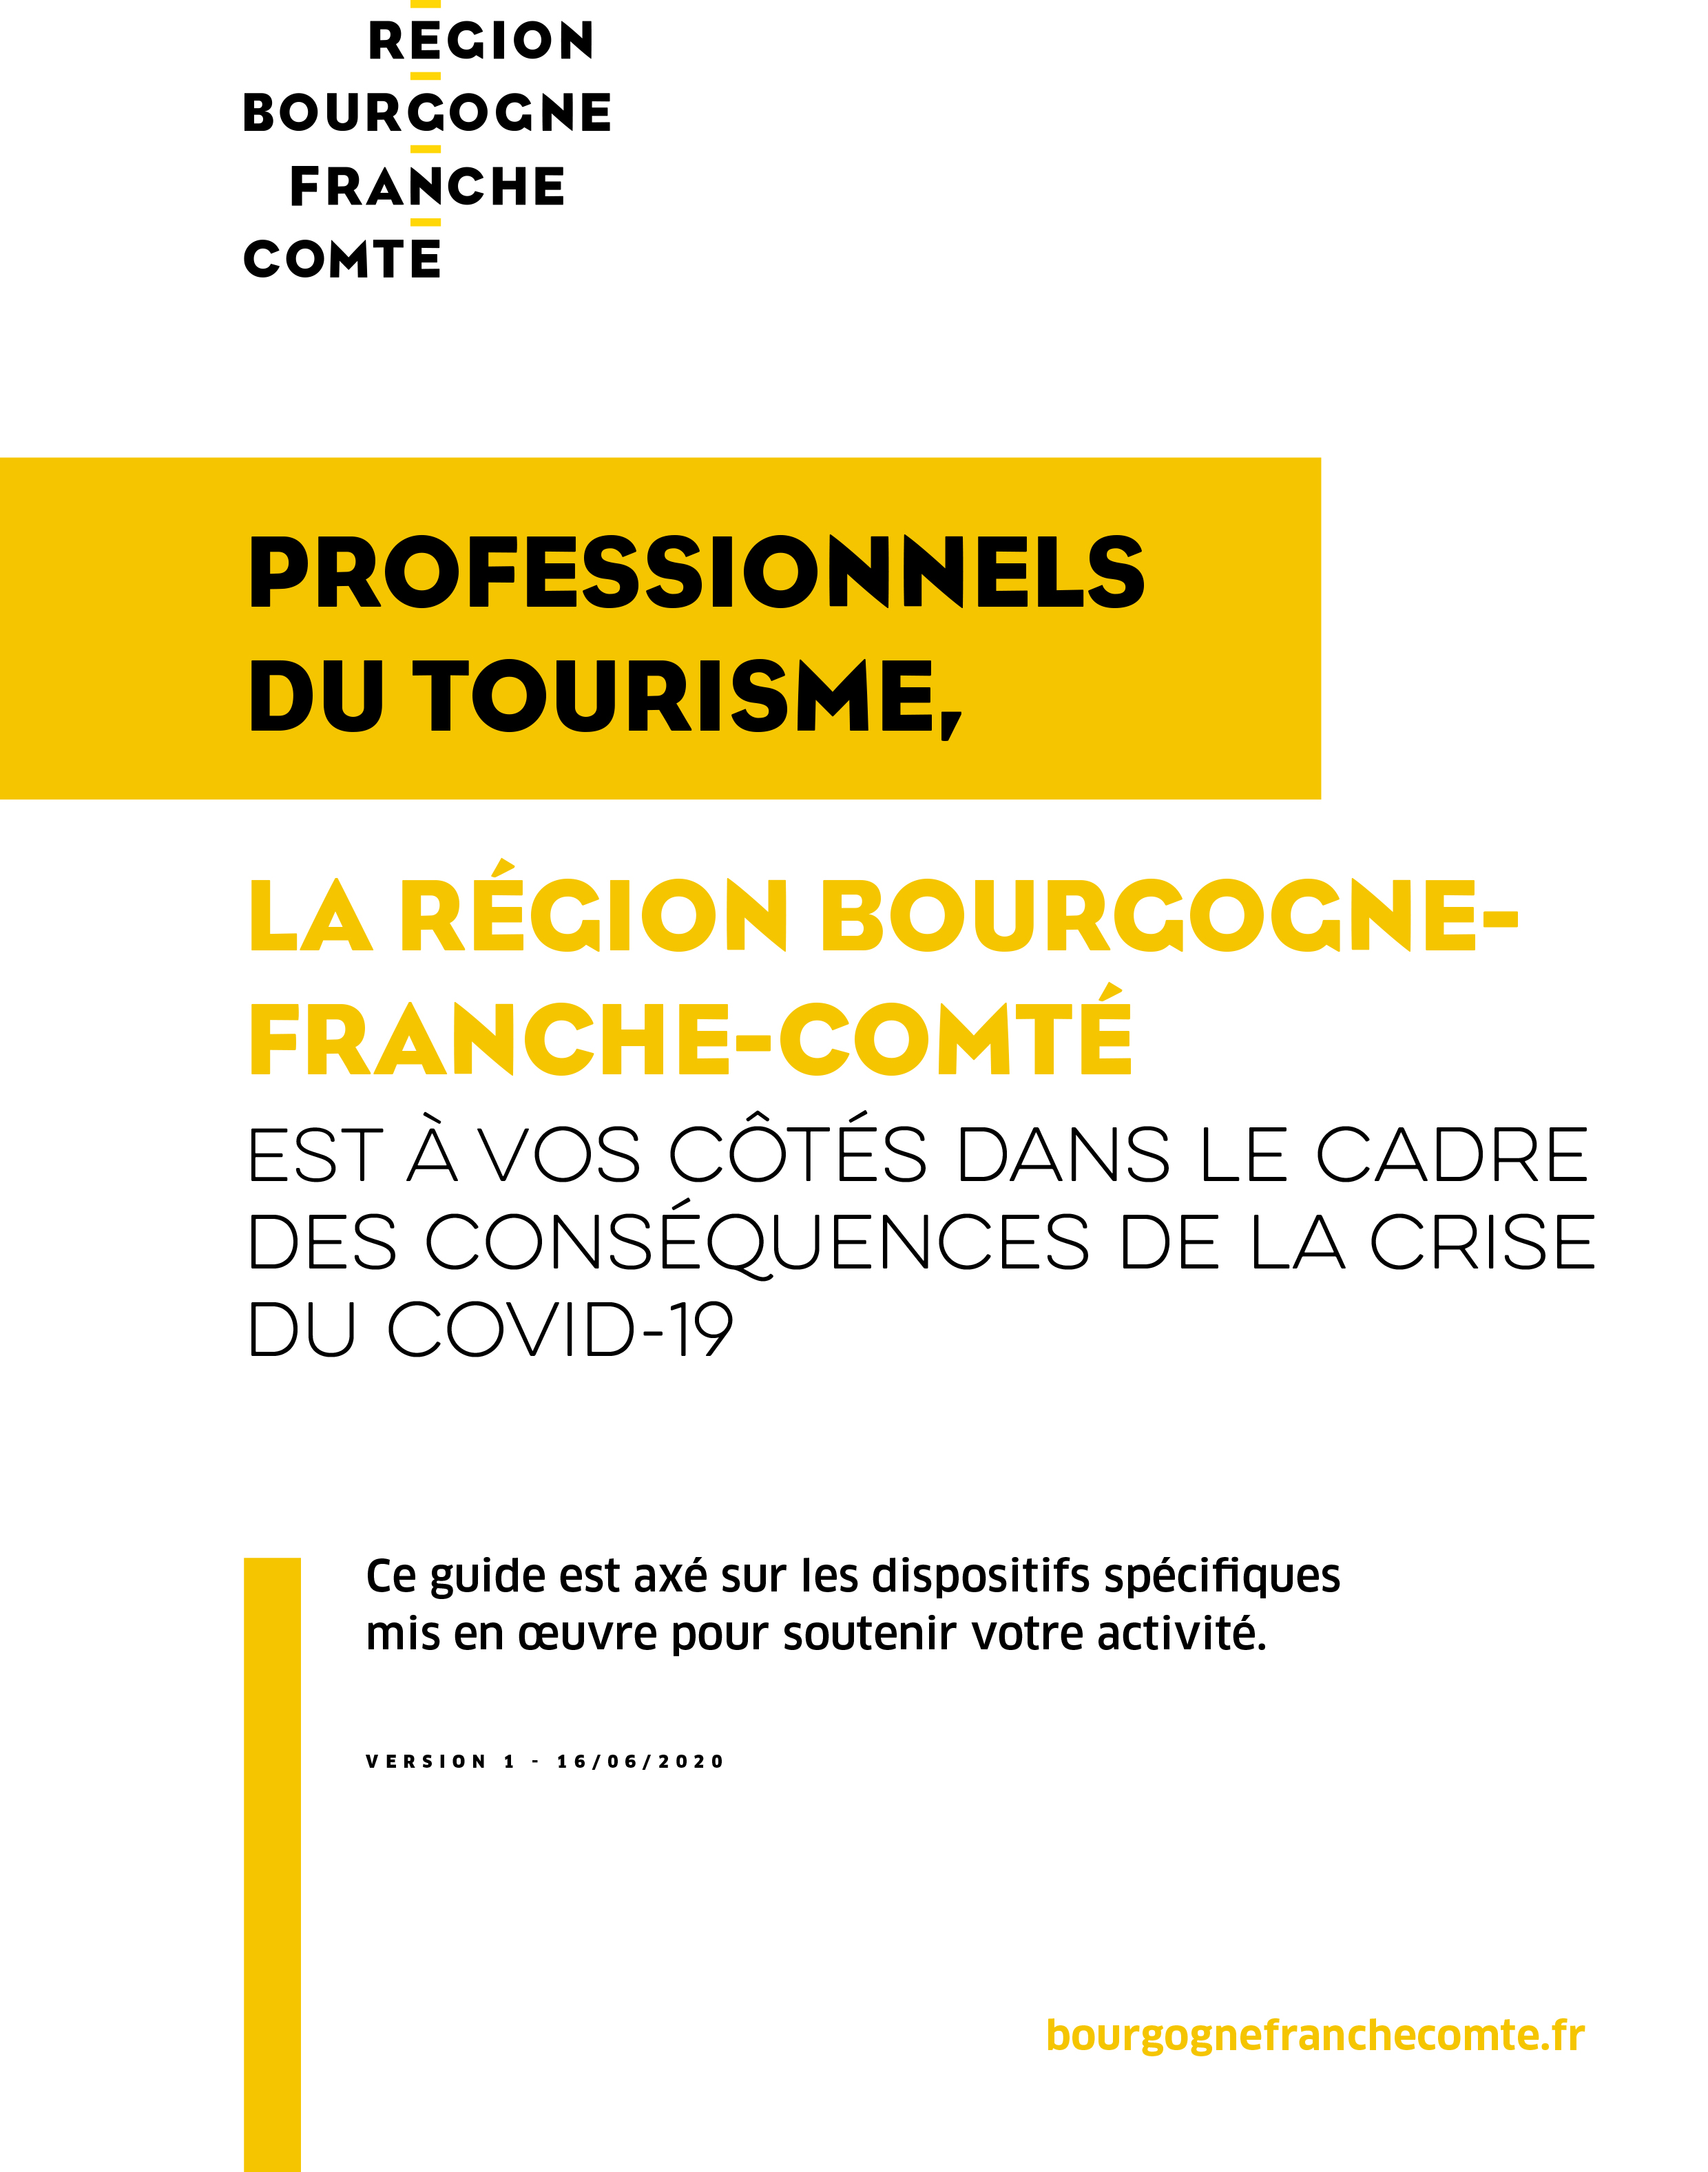 Covid-19 - La région Bourgogne-Franche-Comté aux côtés des professionnels du tourisme dans le cadre des conséquences de la crise